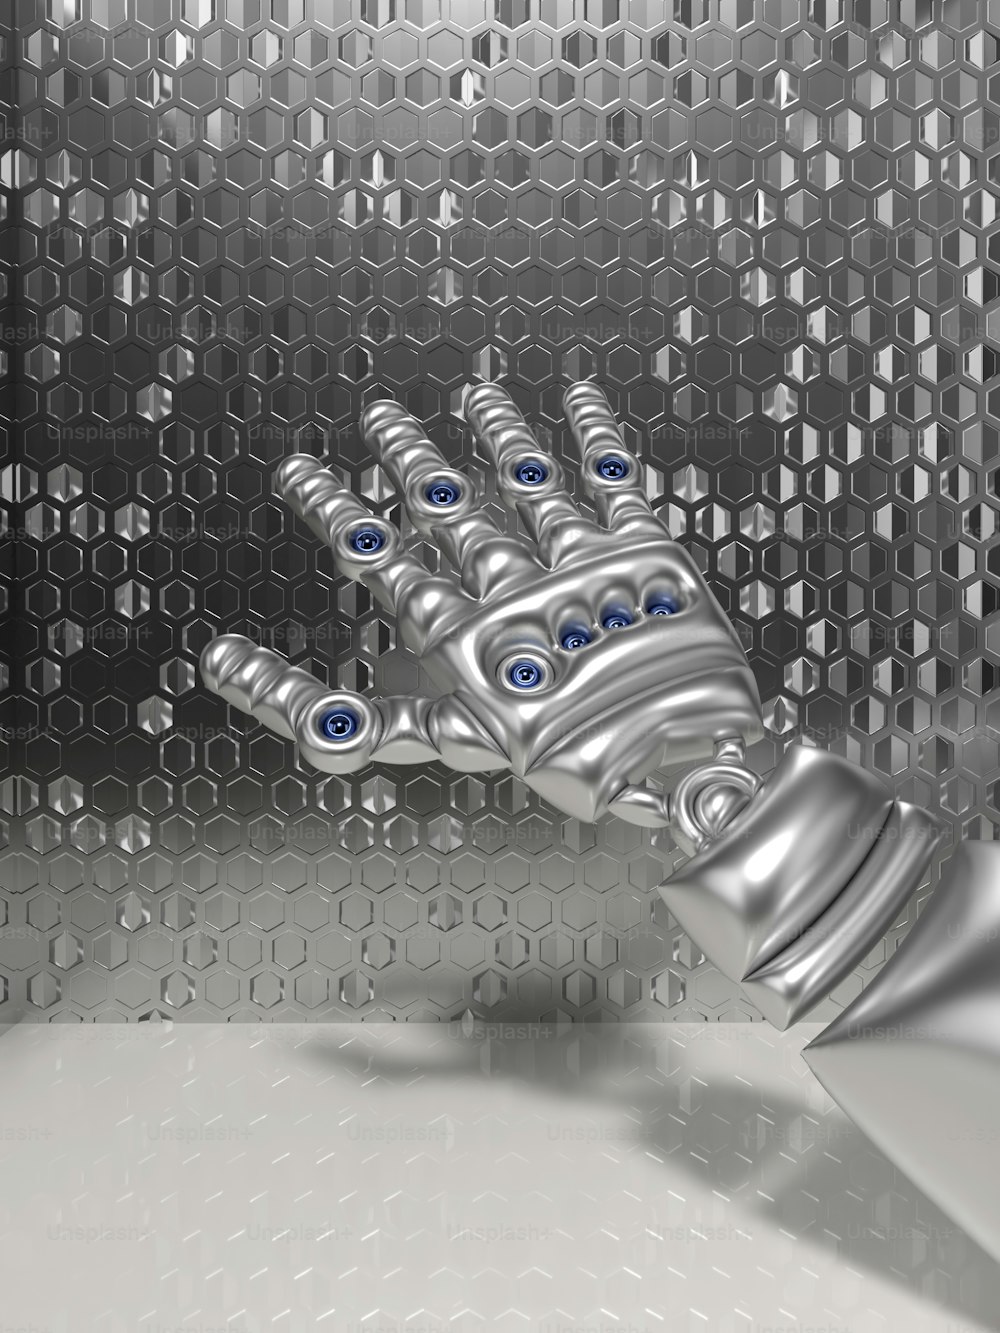 Eine Roboterhand mit blauen Augen ist vor einem metallischen Hintergrund zu sehen